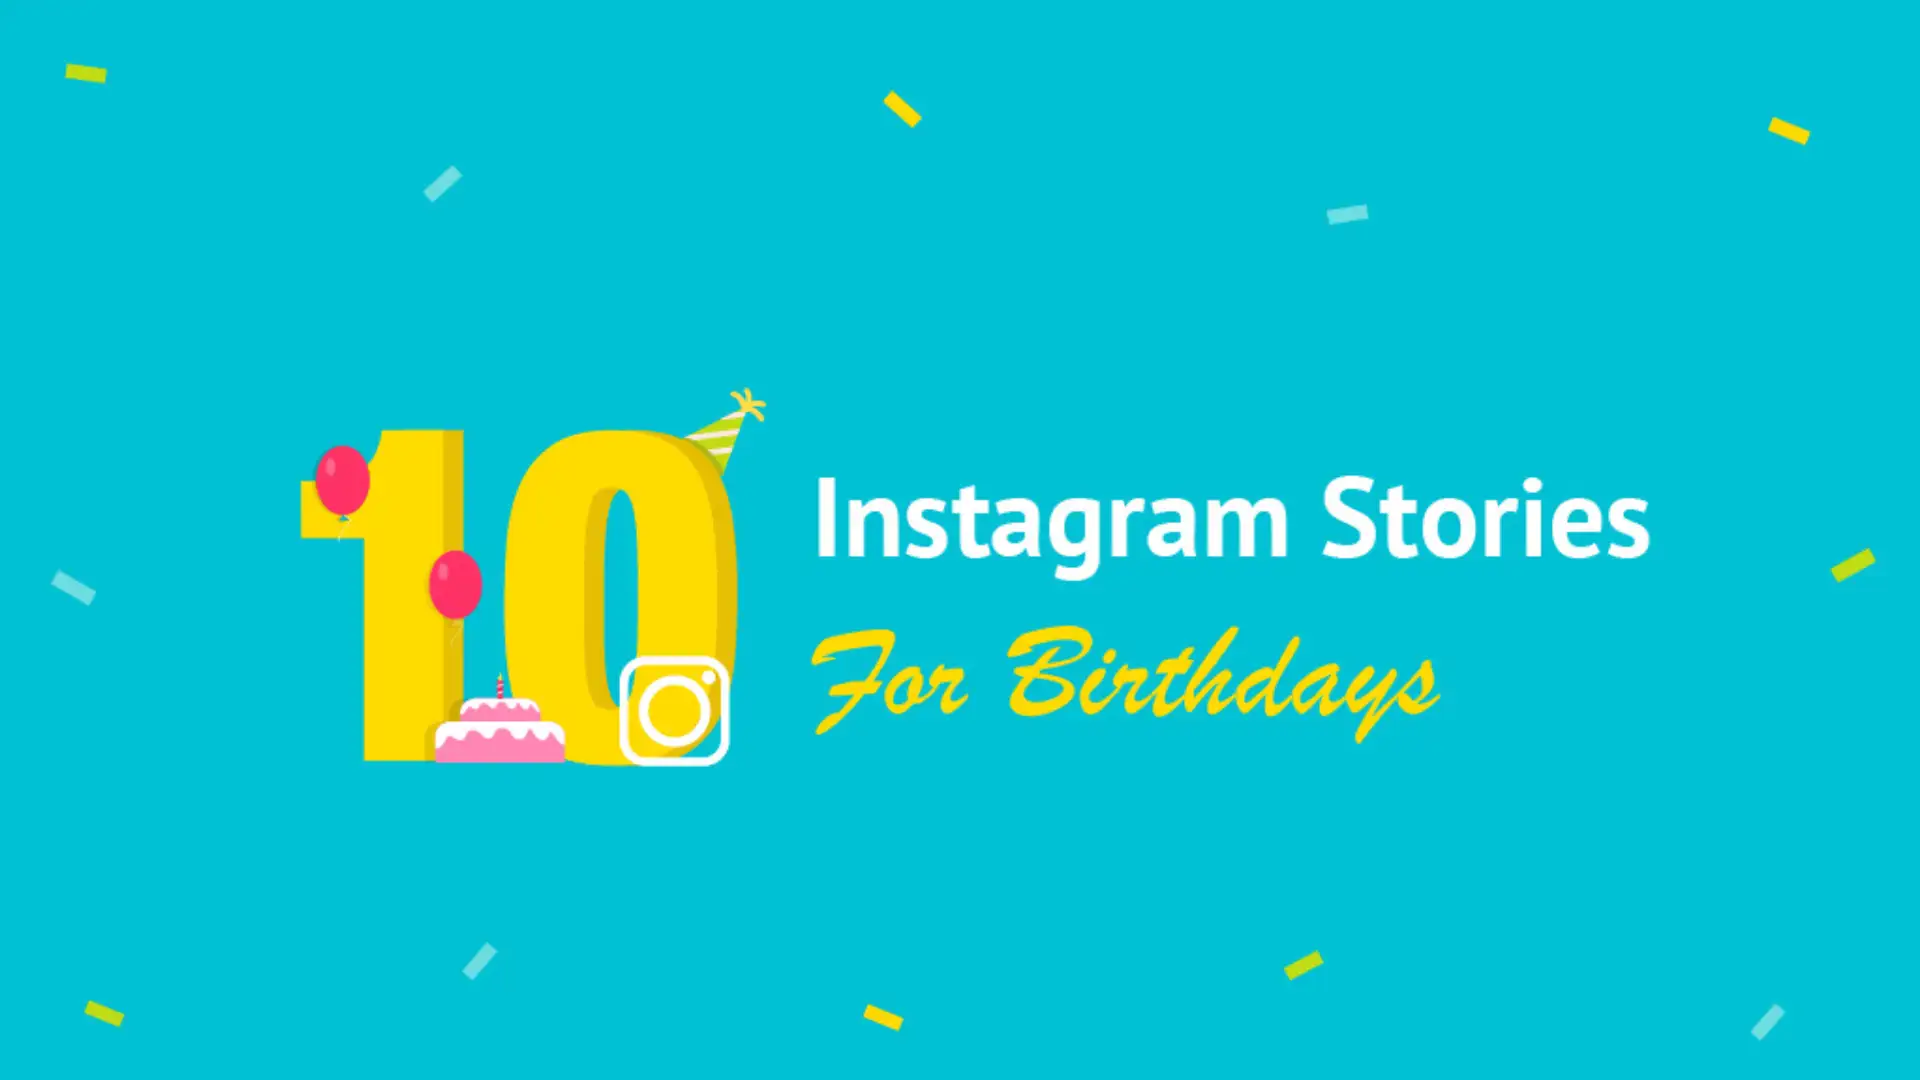 Instagram là một trong những mạng xã hội phổ biến nhất hiện nay. Nếu bạn đang tìm kiếm ý tưởng để tạo ra những câu chuyện sinh nhật \